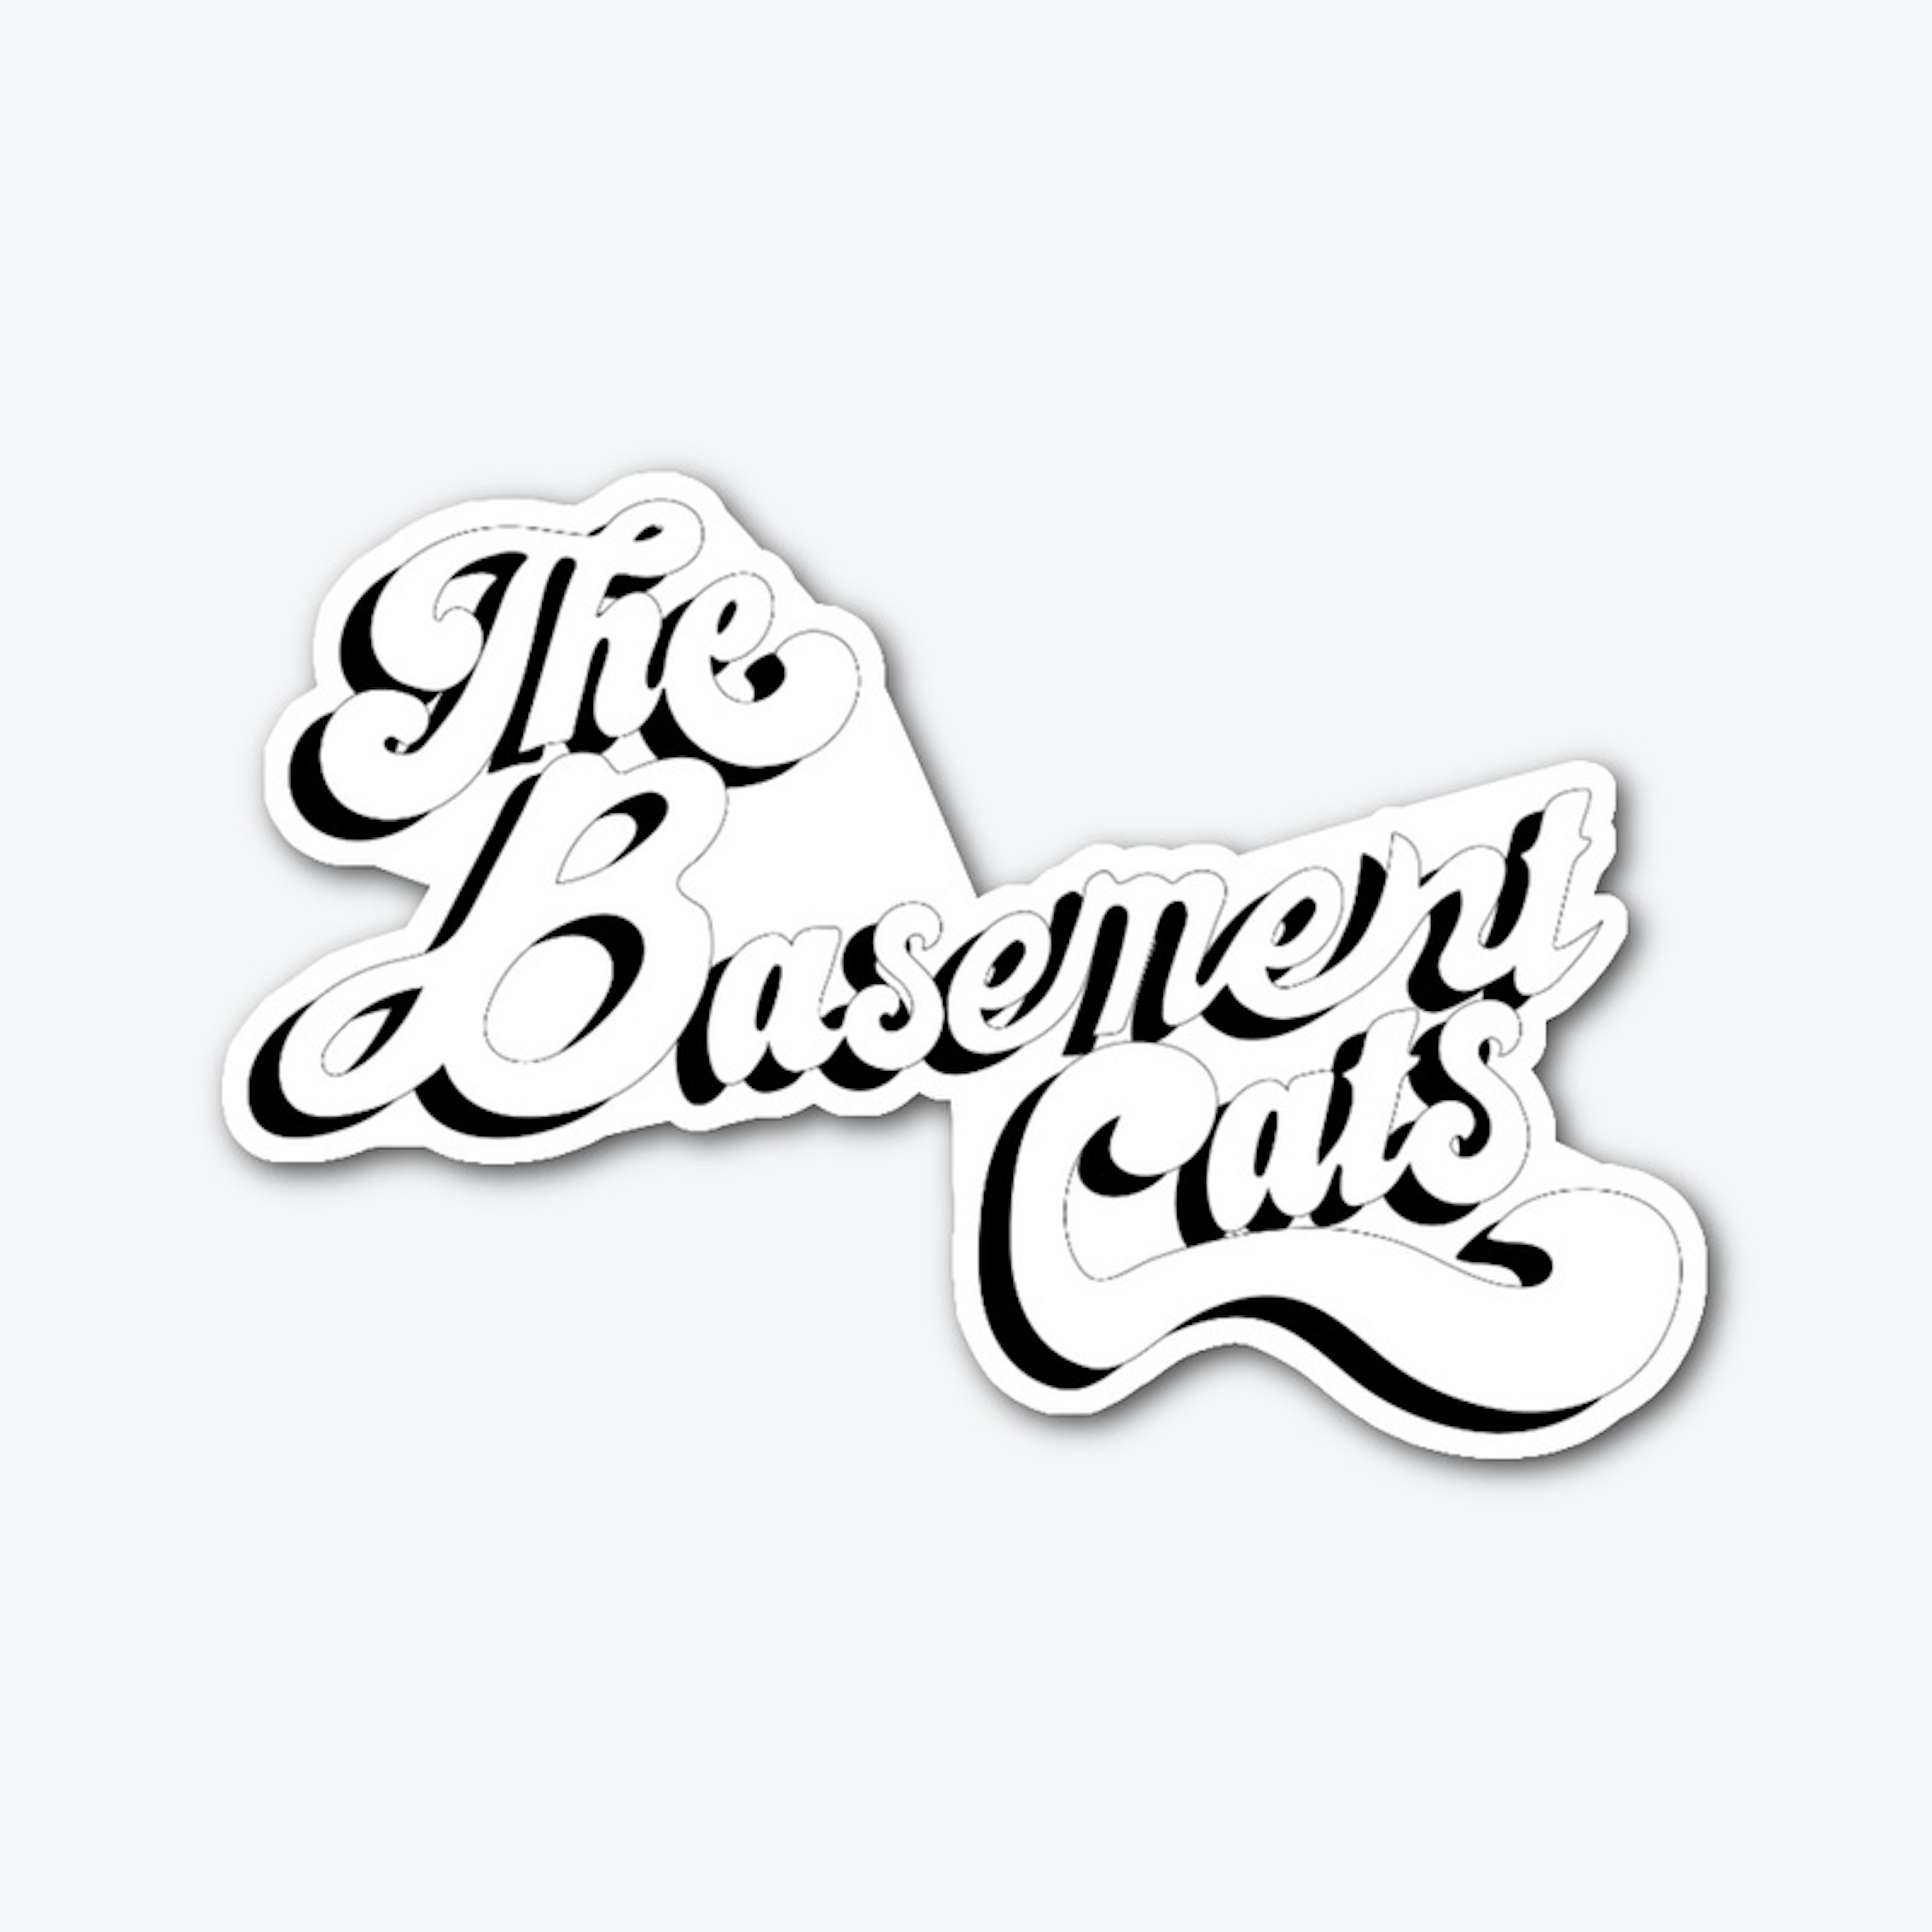 'The Basement Cats' Sticker